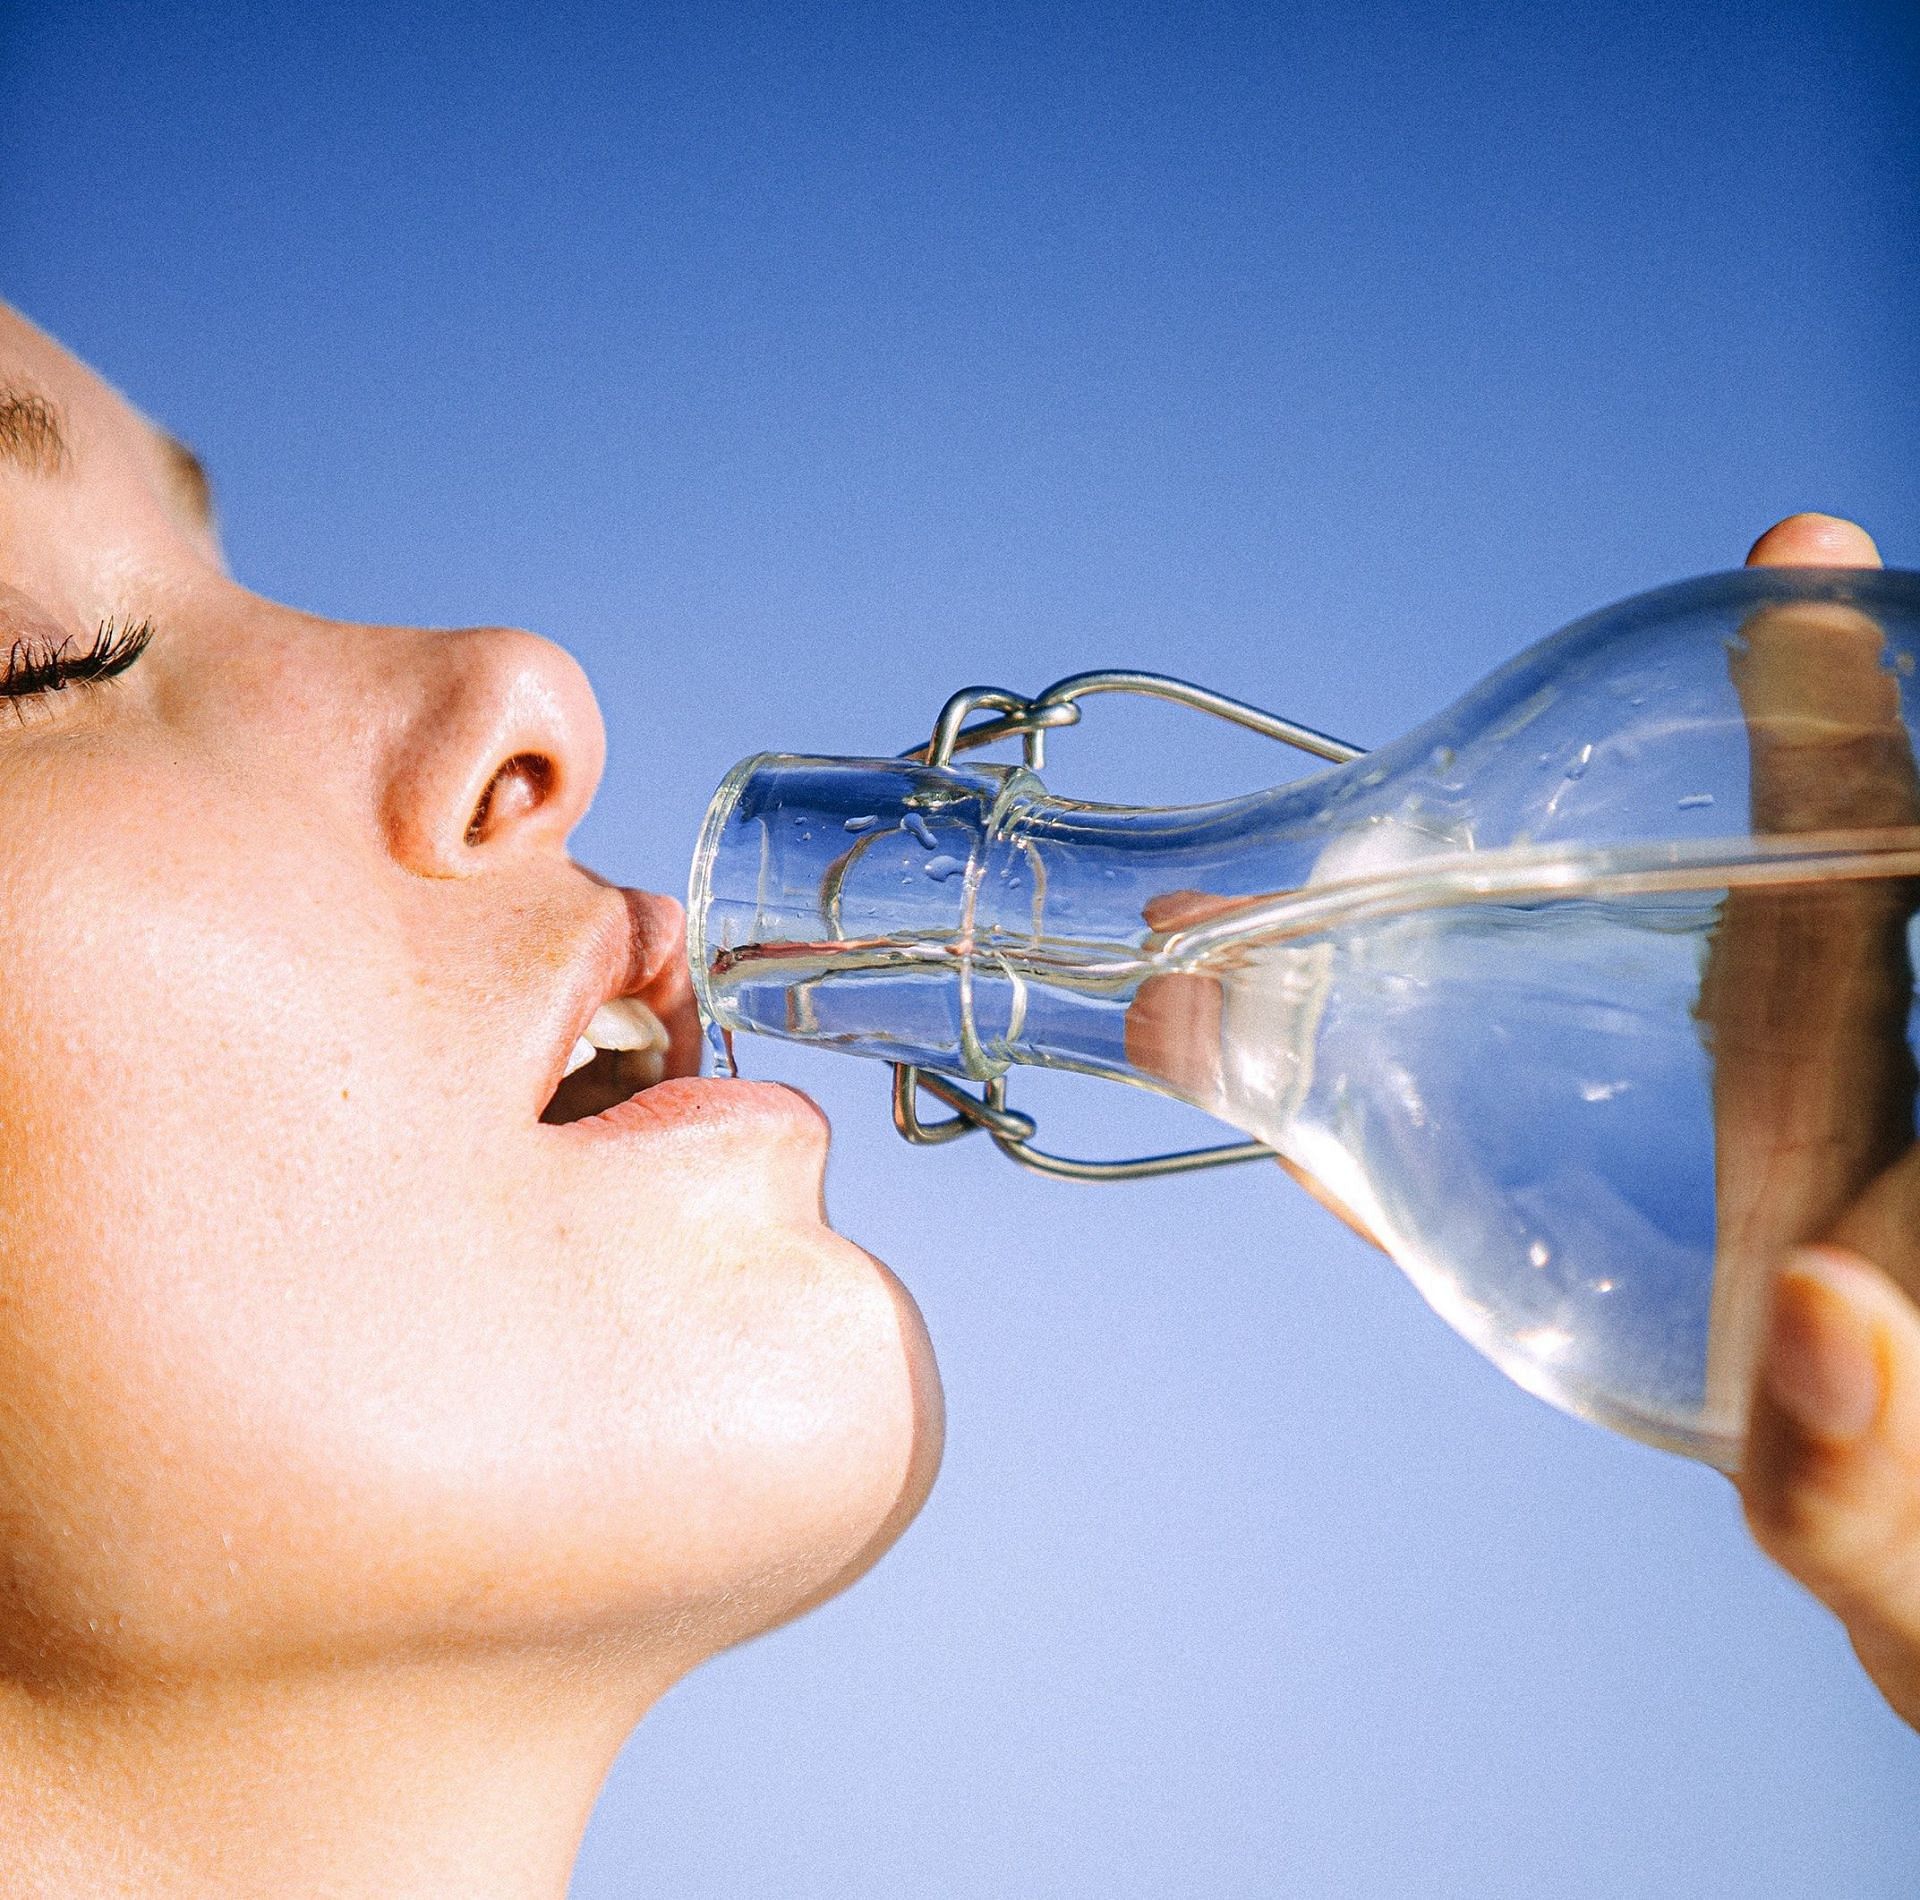 Drink enough water. (Image via Pexels/Arnie Watkins)